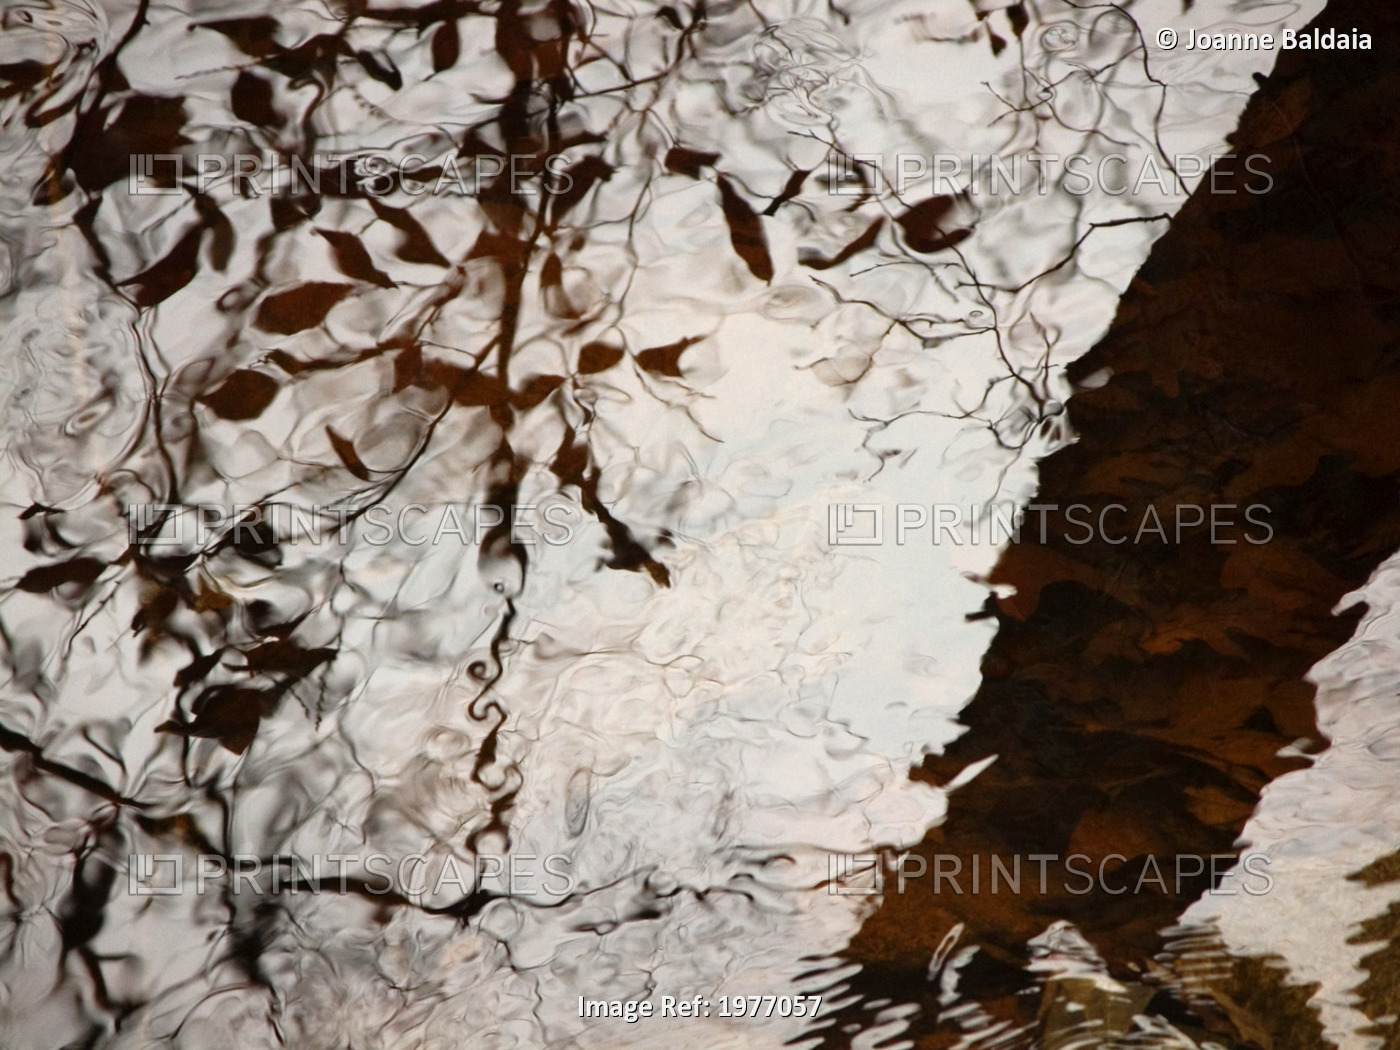 Still Water Woman, Rhode Island, Warren, Tree Reflections On Water.